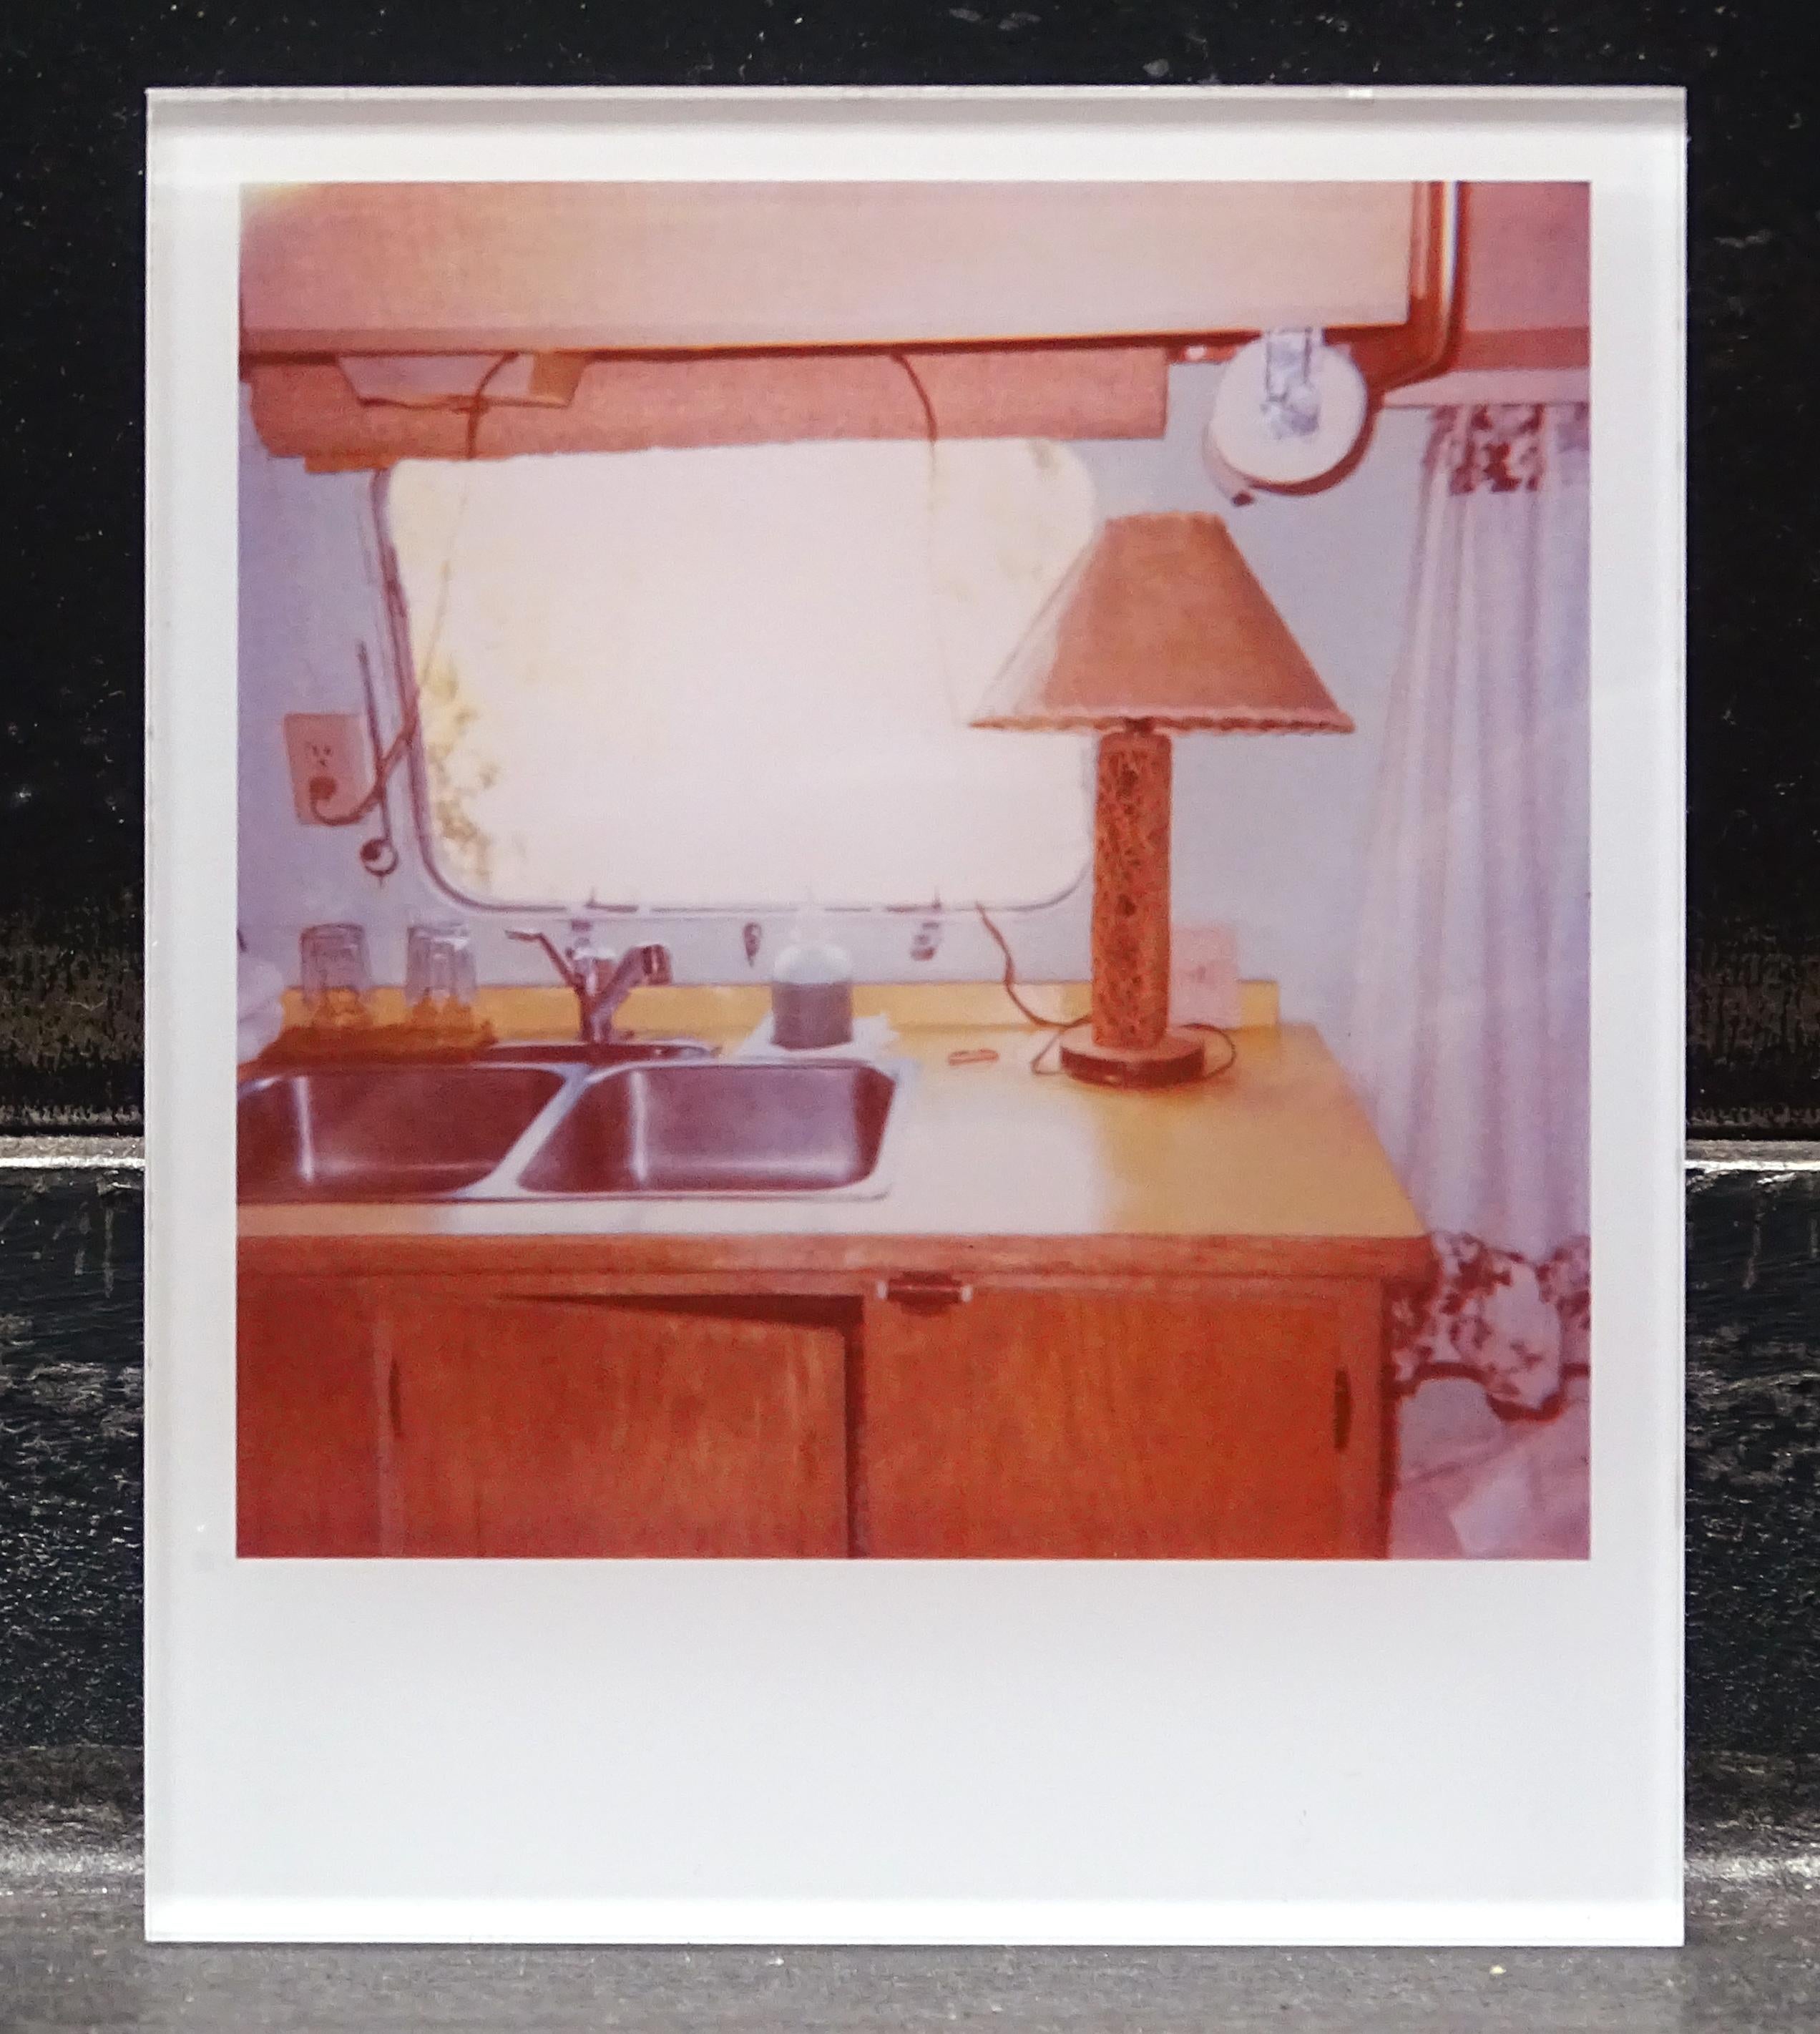 Die Minis von Stefanie Schneider
Airstream (Sidewinder), 2005

Verso signiert und Signaturmarke.
Digitale Lambda-Farbfotografien auf der Grundlage eines Polaroids.
Eingeklemmt zwischen Plexiglas (Dicke 0,7 cm)

Offene Editionen in Polaroidgröße